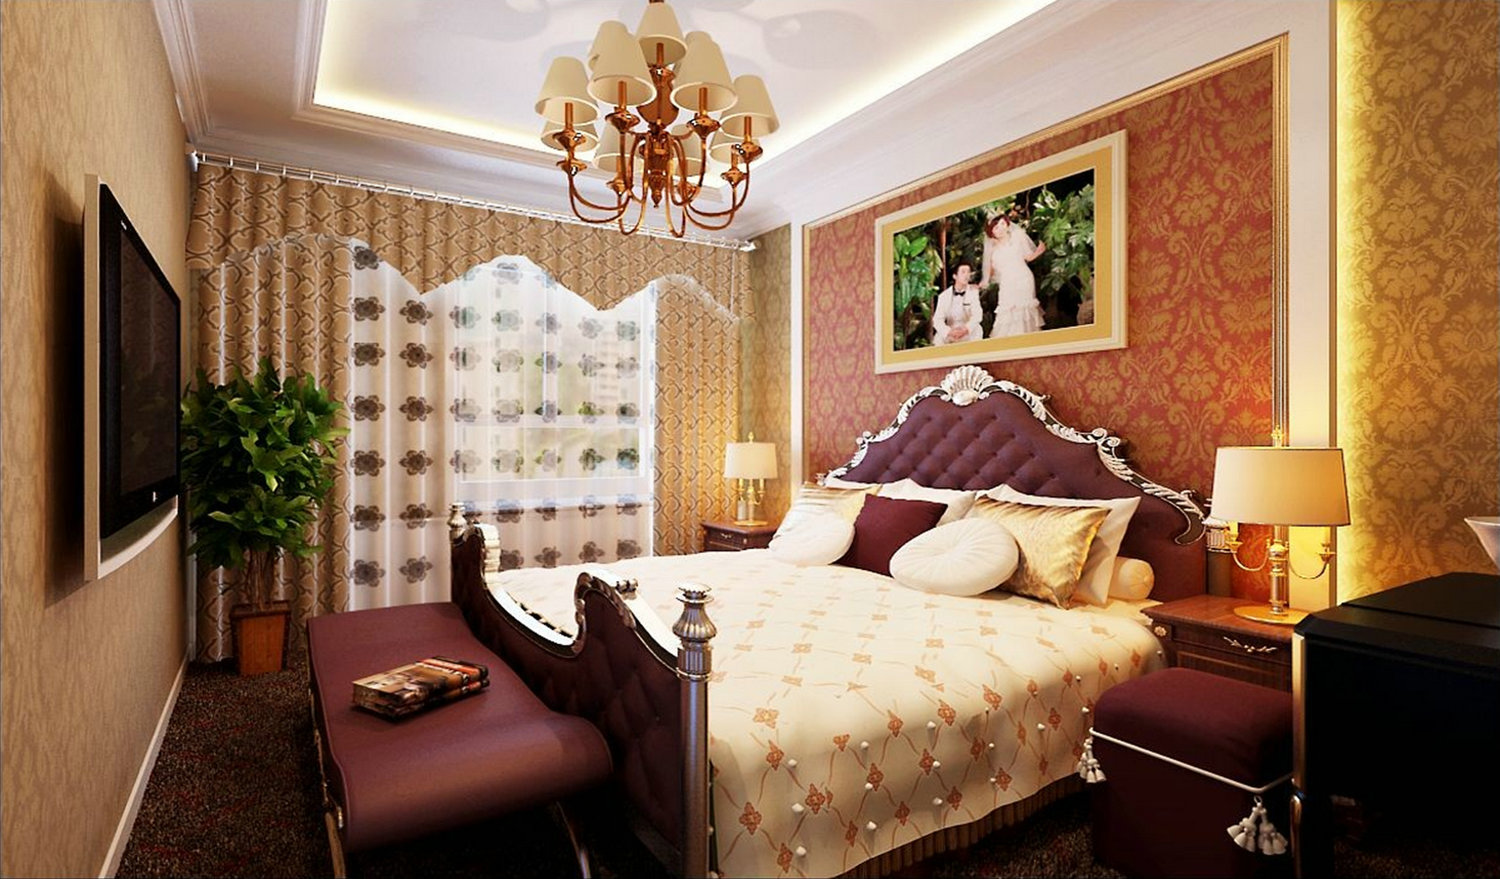 后现代 两居室 小户型 上海实创 装修公司 卧室图片来自孙进进在上海实创小户型后现代多元素展示的分享